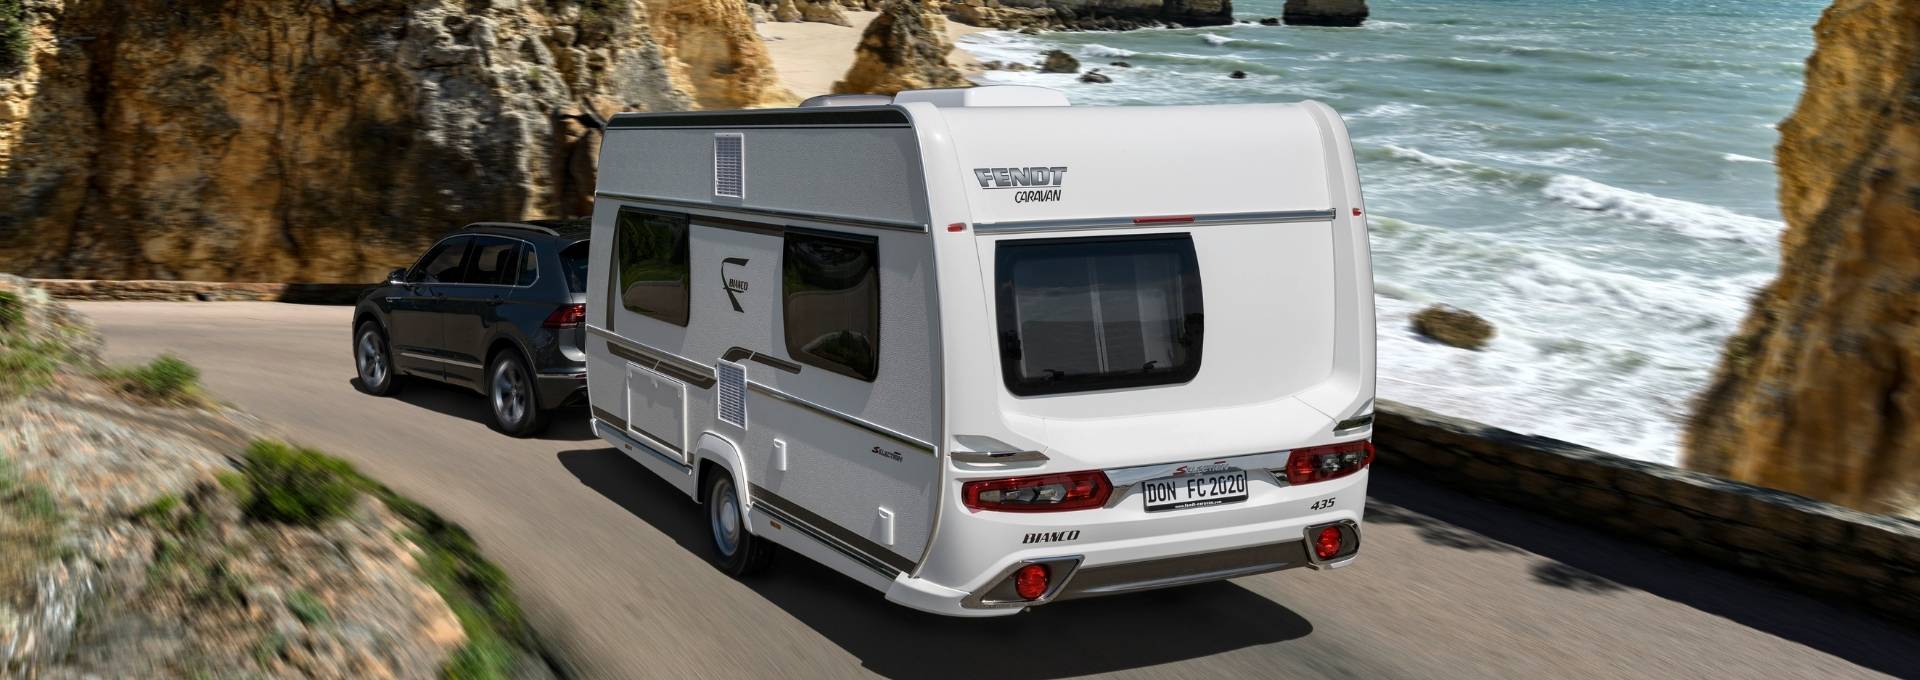 Wohnwagen Bianco Selection von Fendt Caravan auf einer Straße am Meer